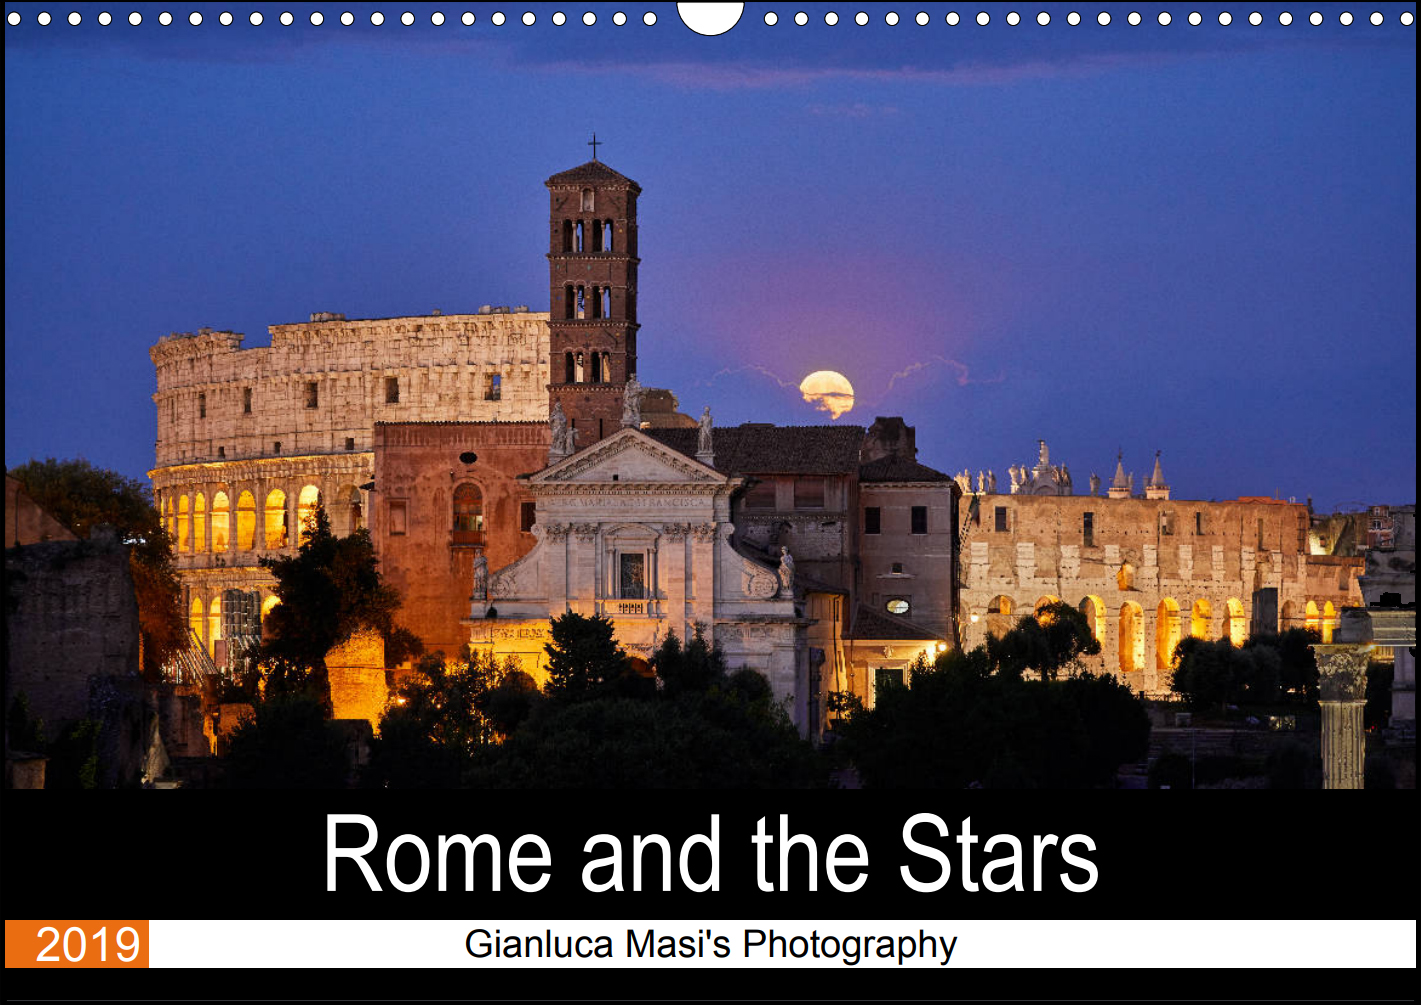 Al momento stai visualizzando “Roma e le Stelle”: un originale calendario per il 2019 con le immagini uniche di Gianluca Masi